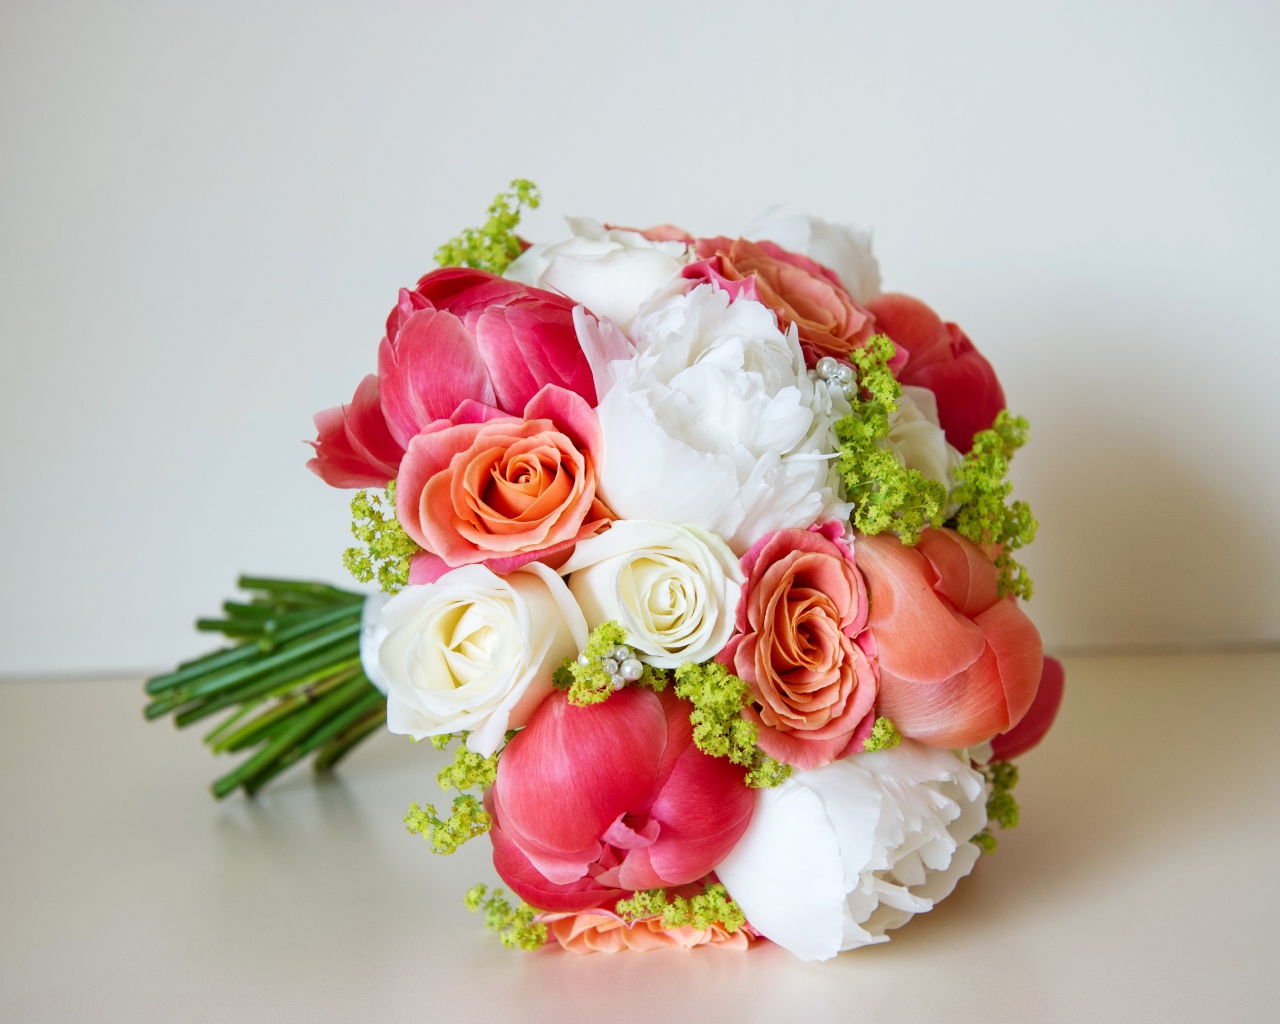 Красивый свадебный букет из цветов розы и пиона